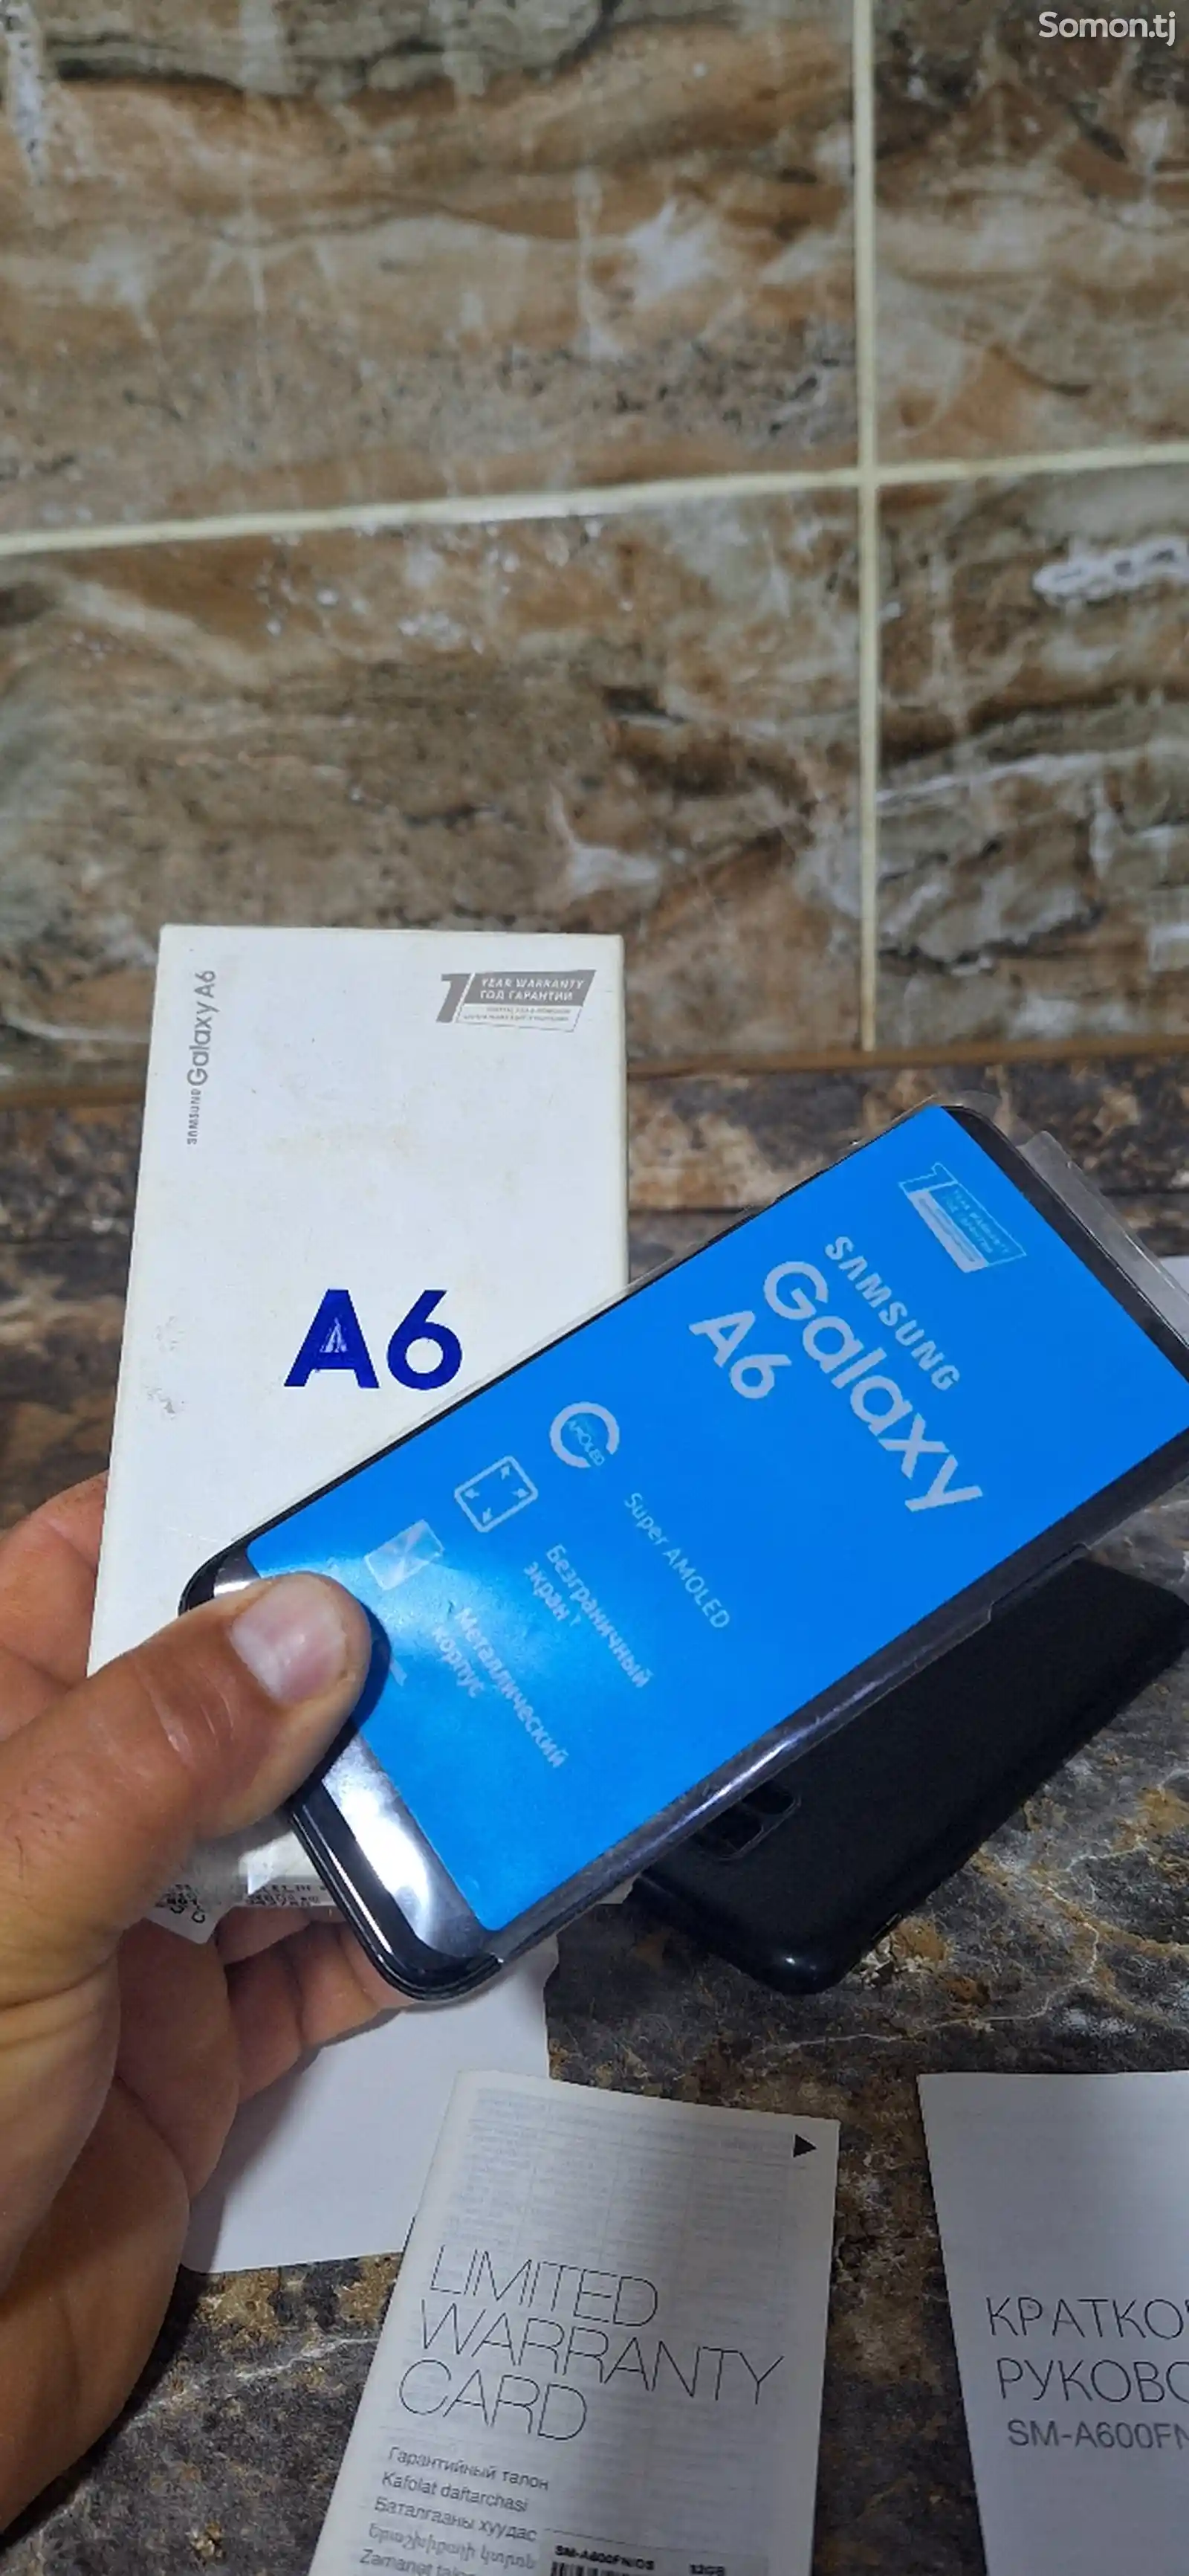 Samsung Galaxy A6-3